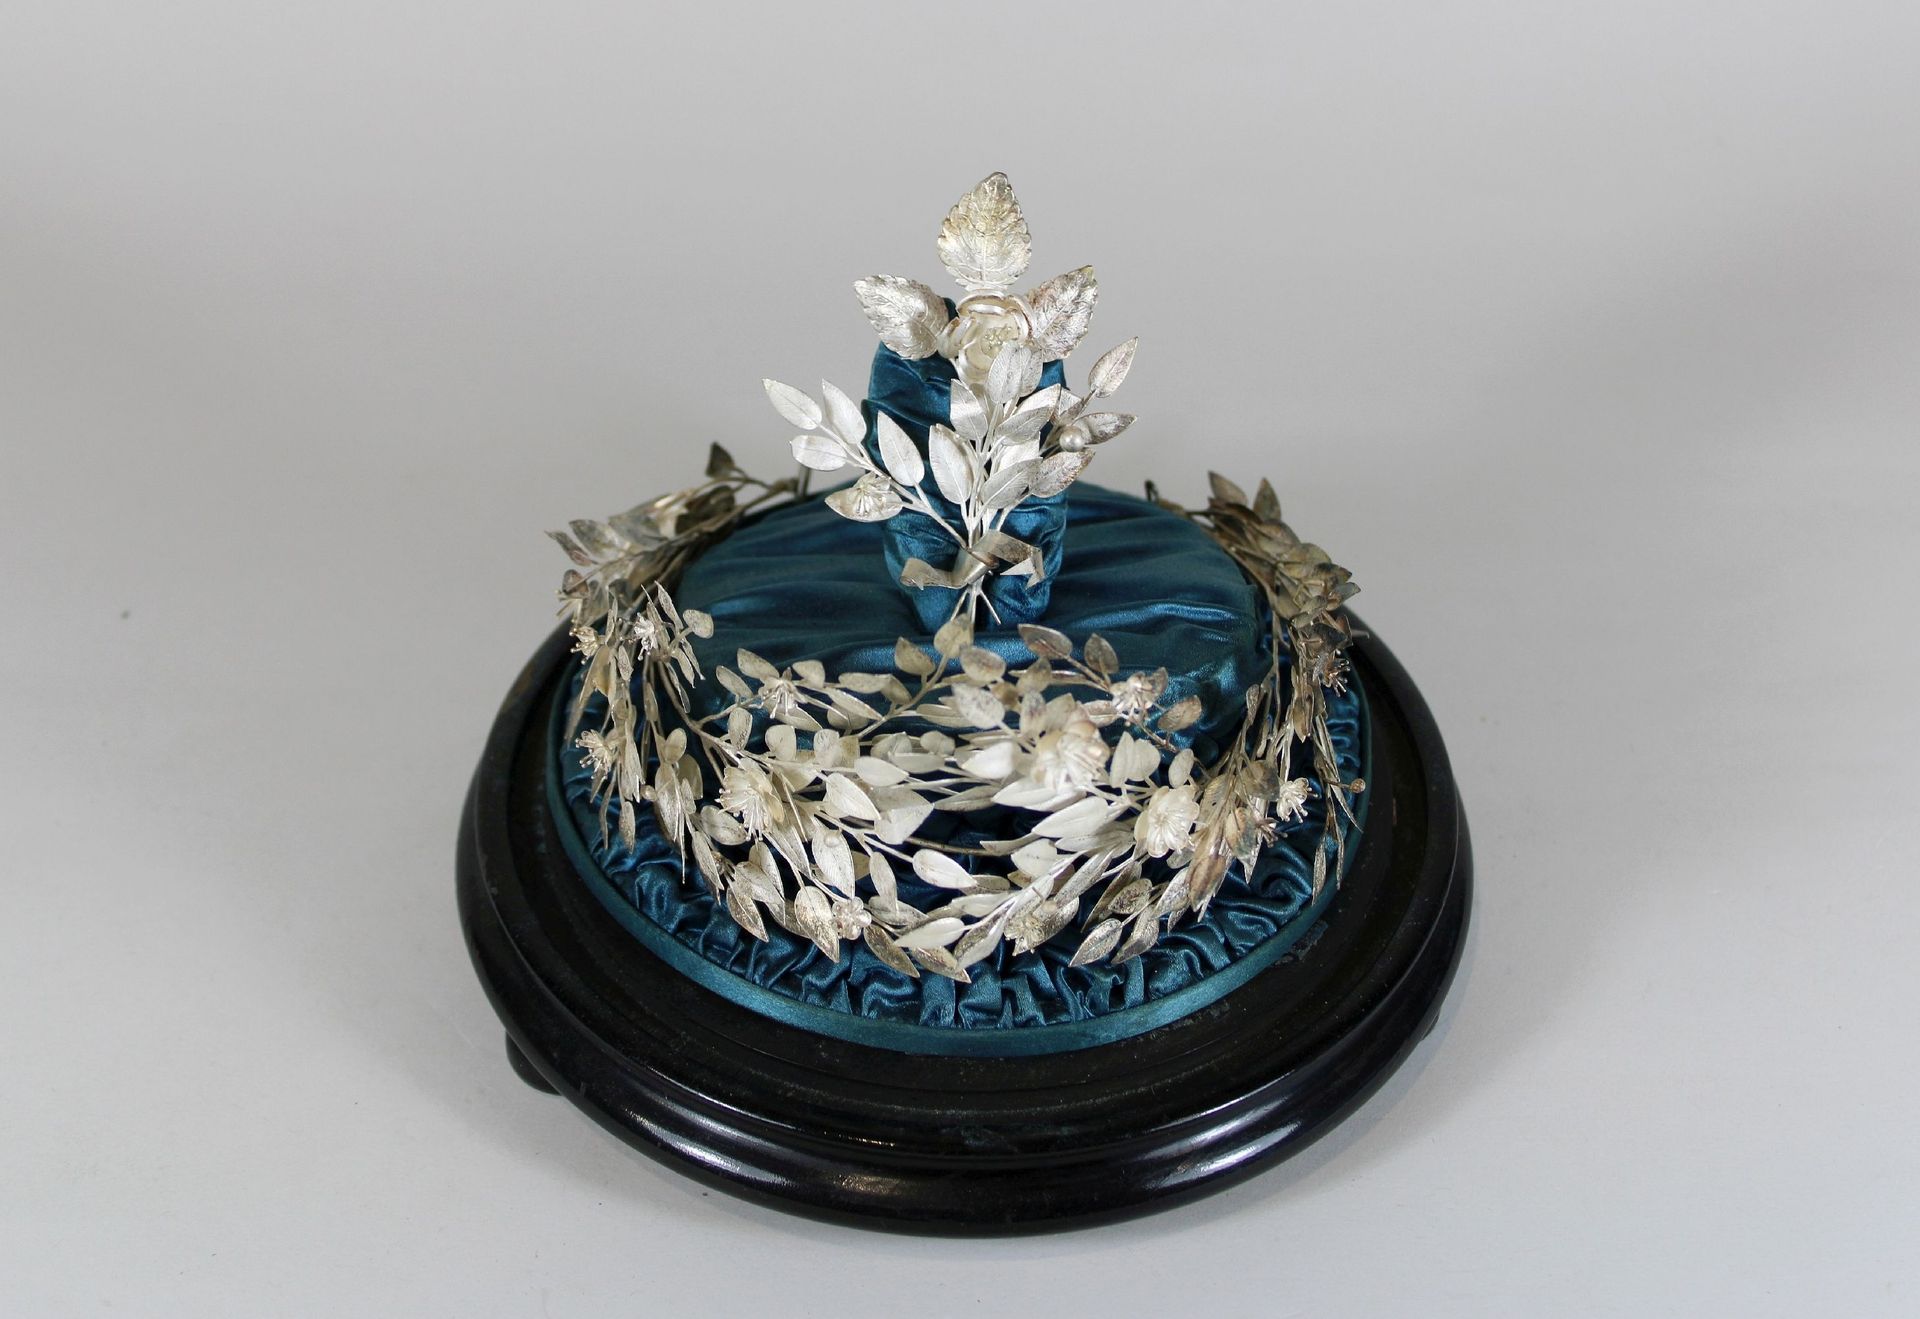 Silberkranz unter Glas 玻璃下的银质花环，月桂花环，金属，镀银，铺在绸缎上，装饰品，20世纪，高约21厘米，长约20厘米，状态因年代而异。